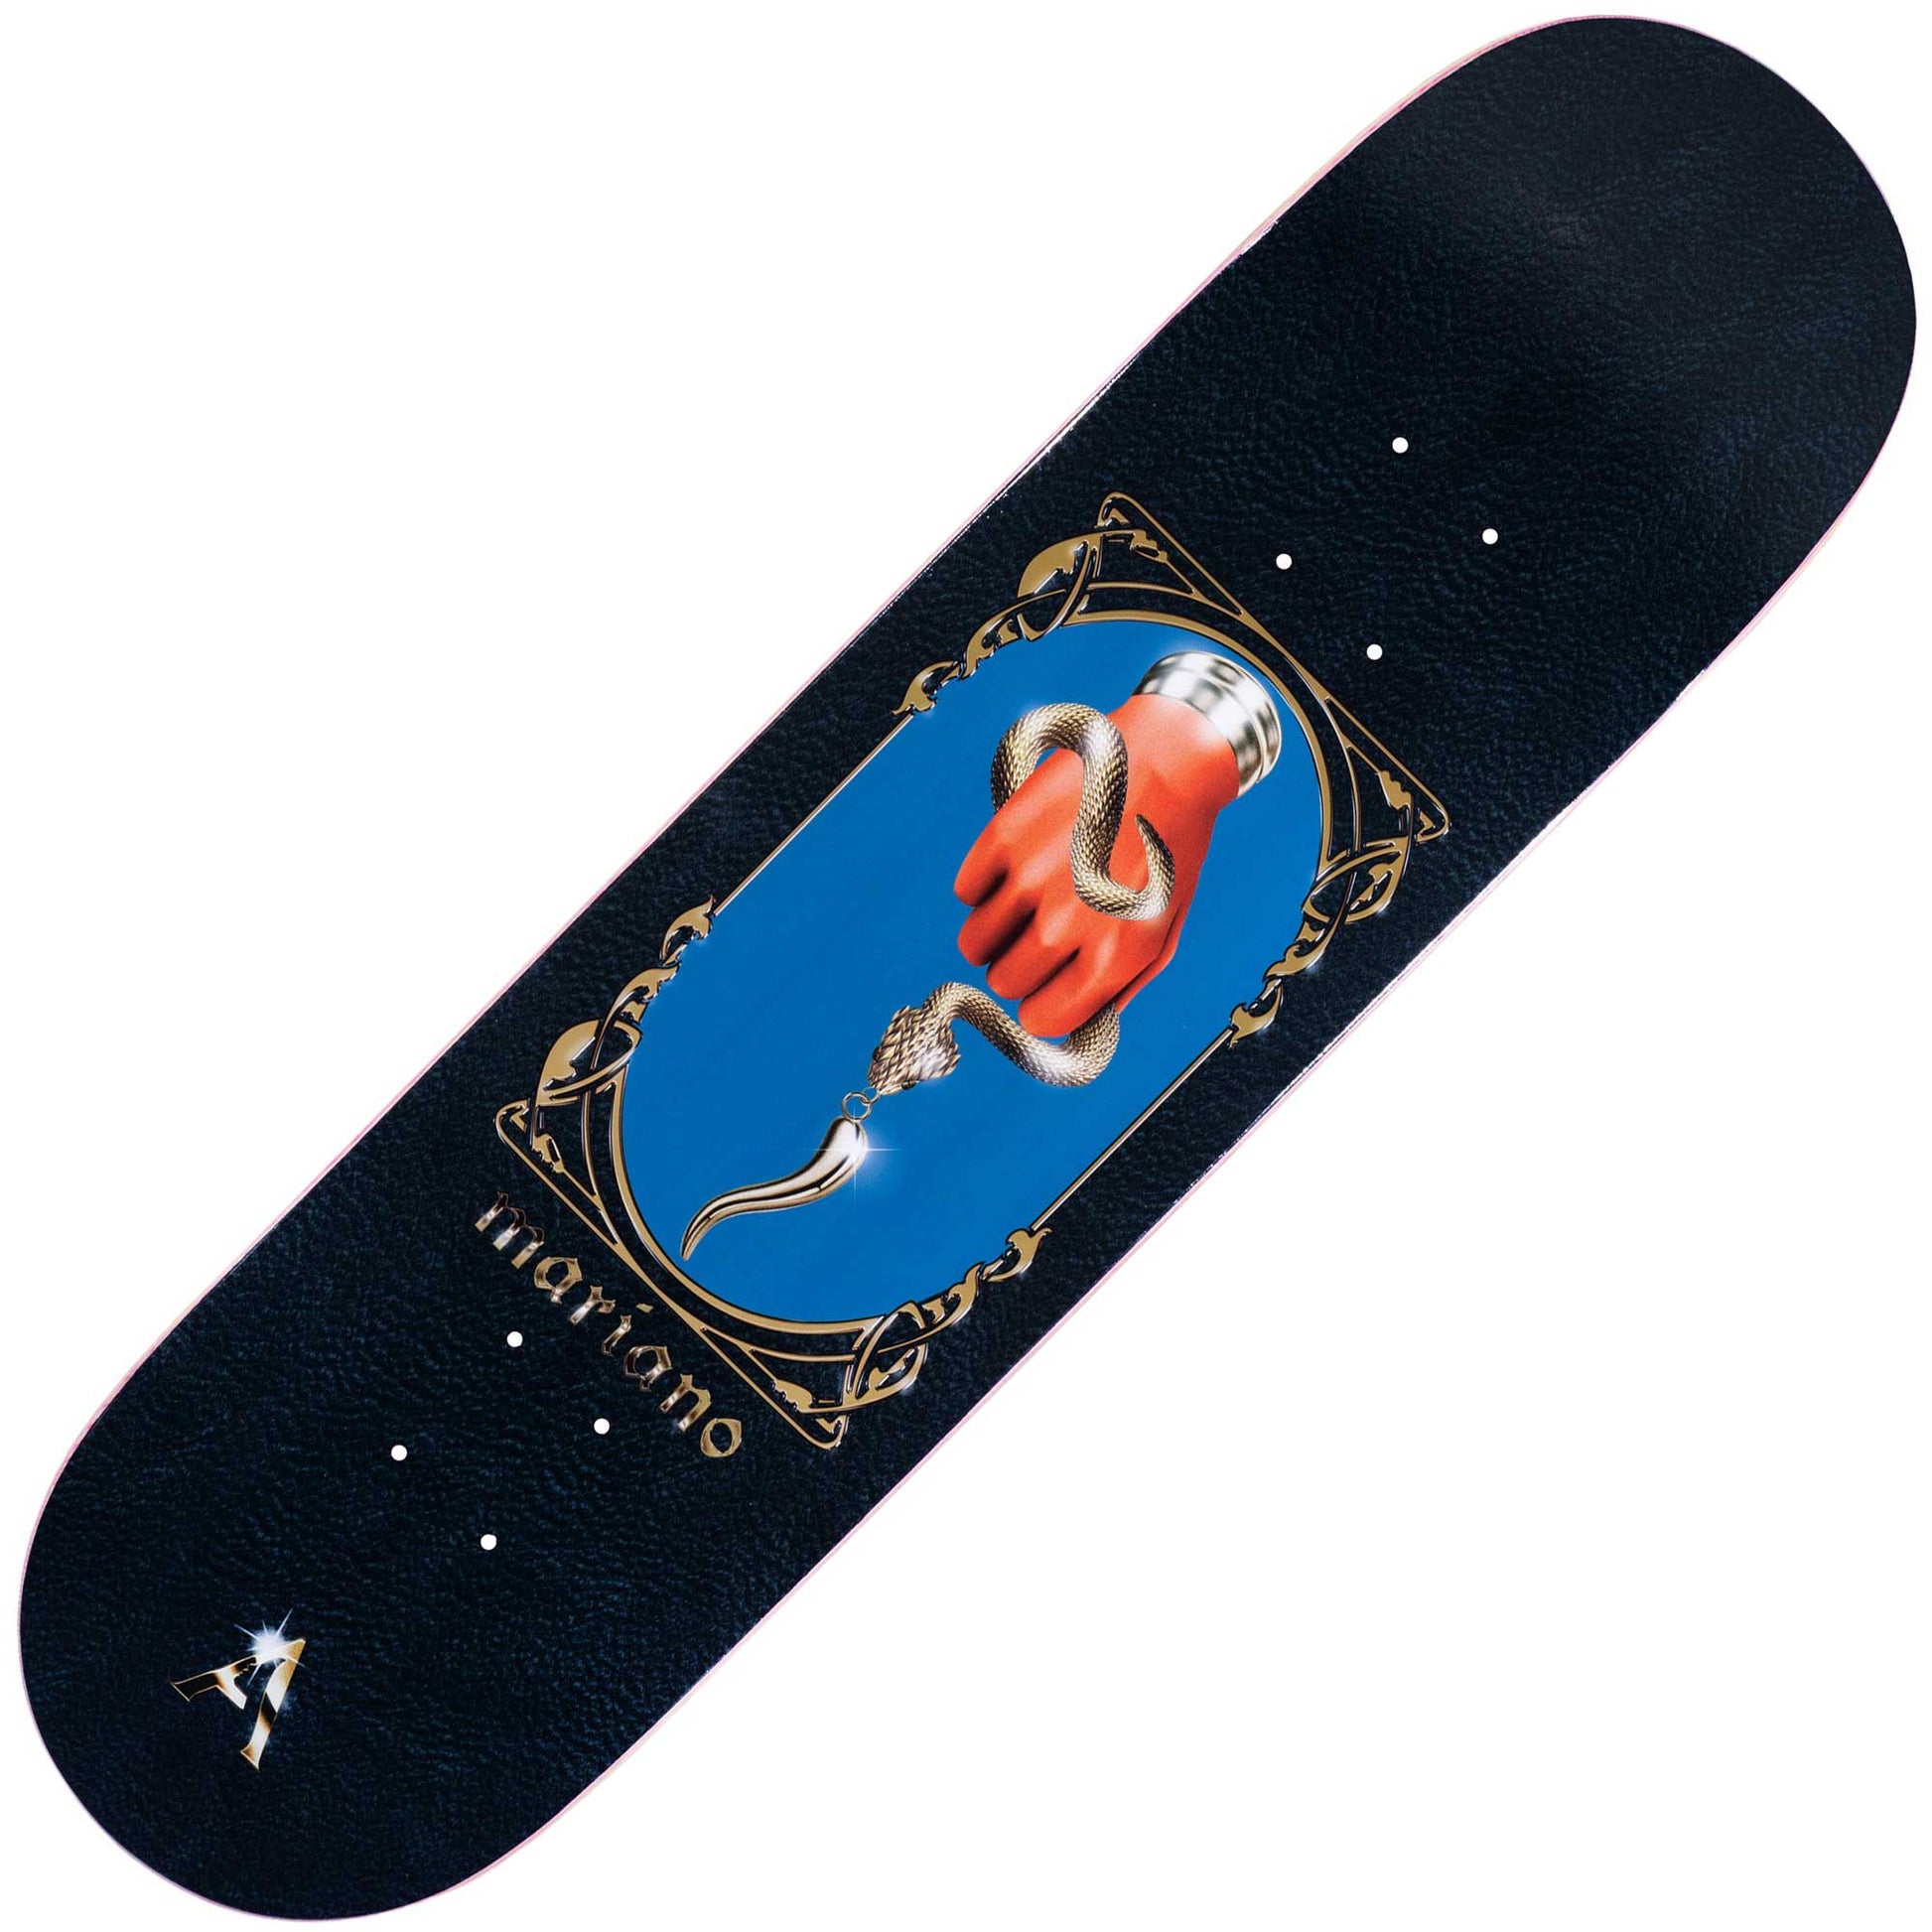 April Guy Mariano Deck (8.0") - Tiki Room Skateboards - 1